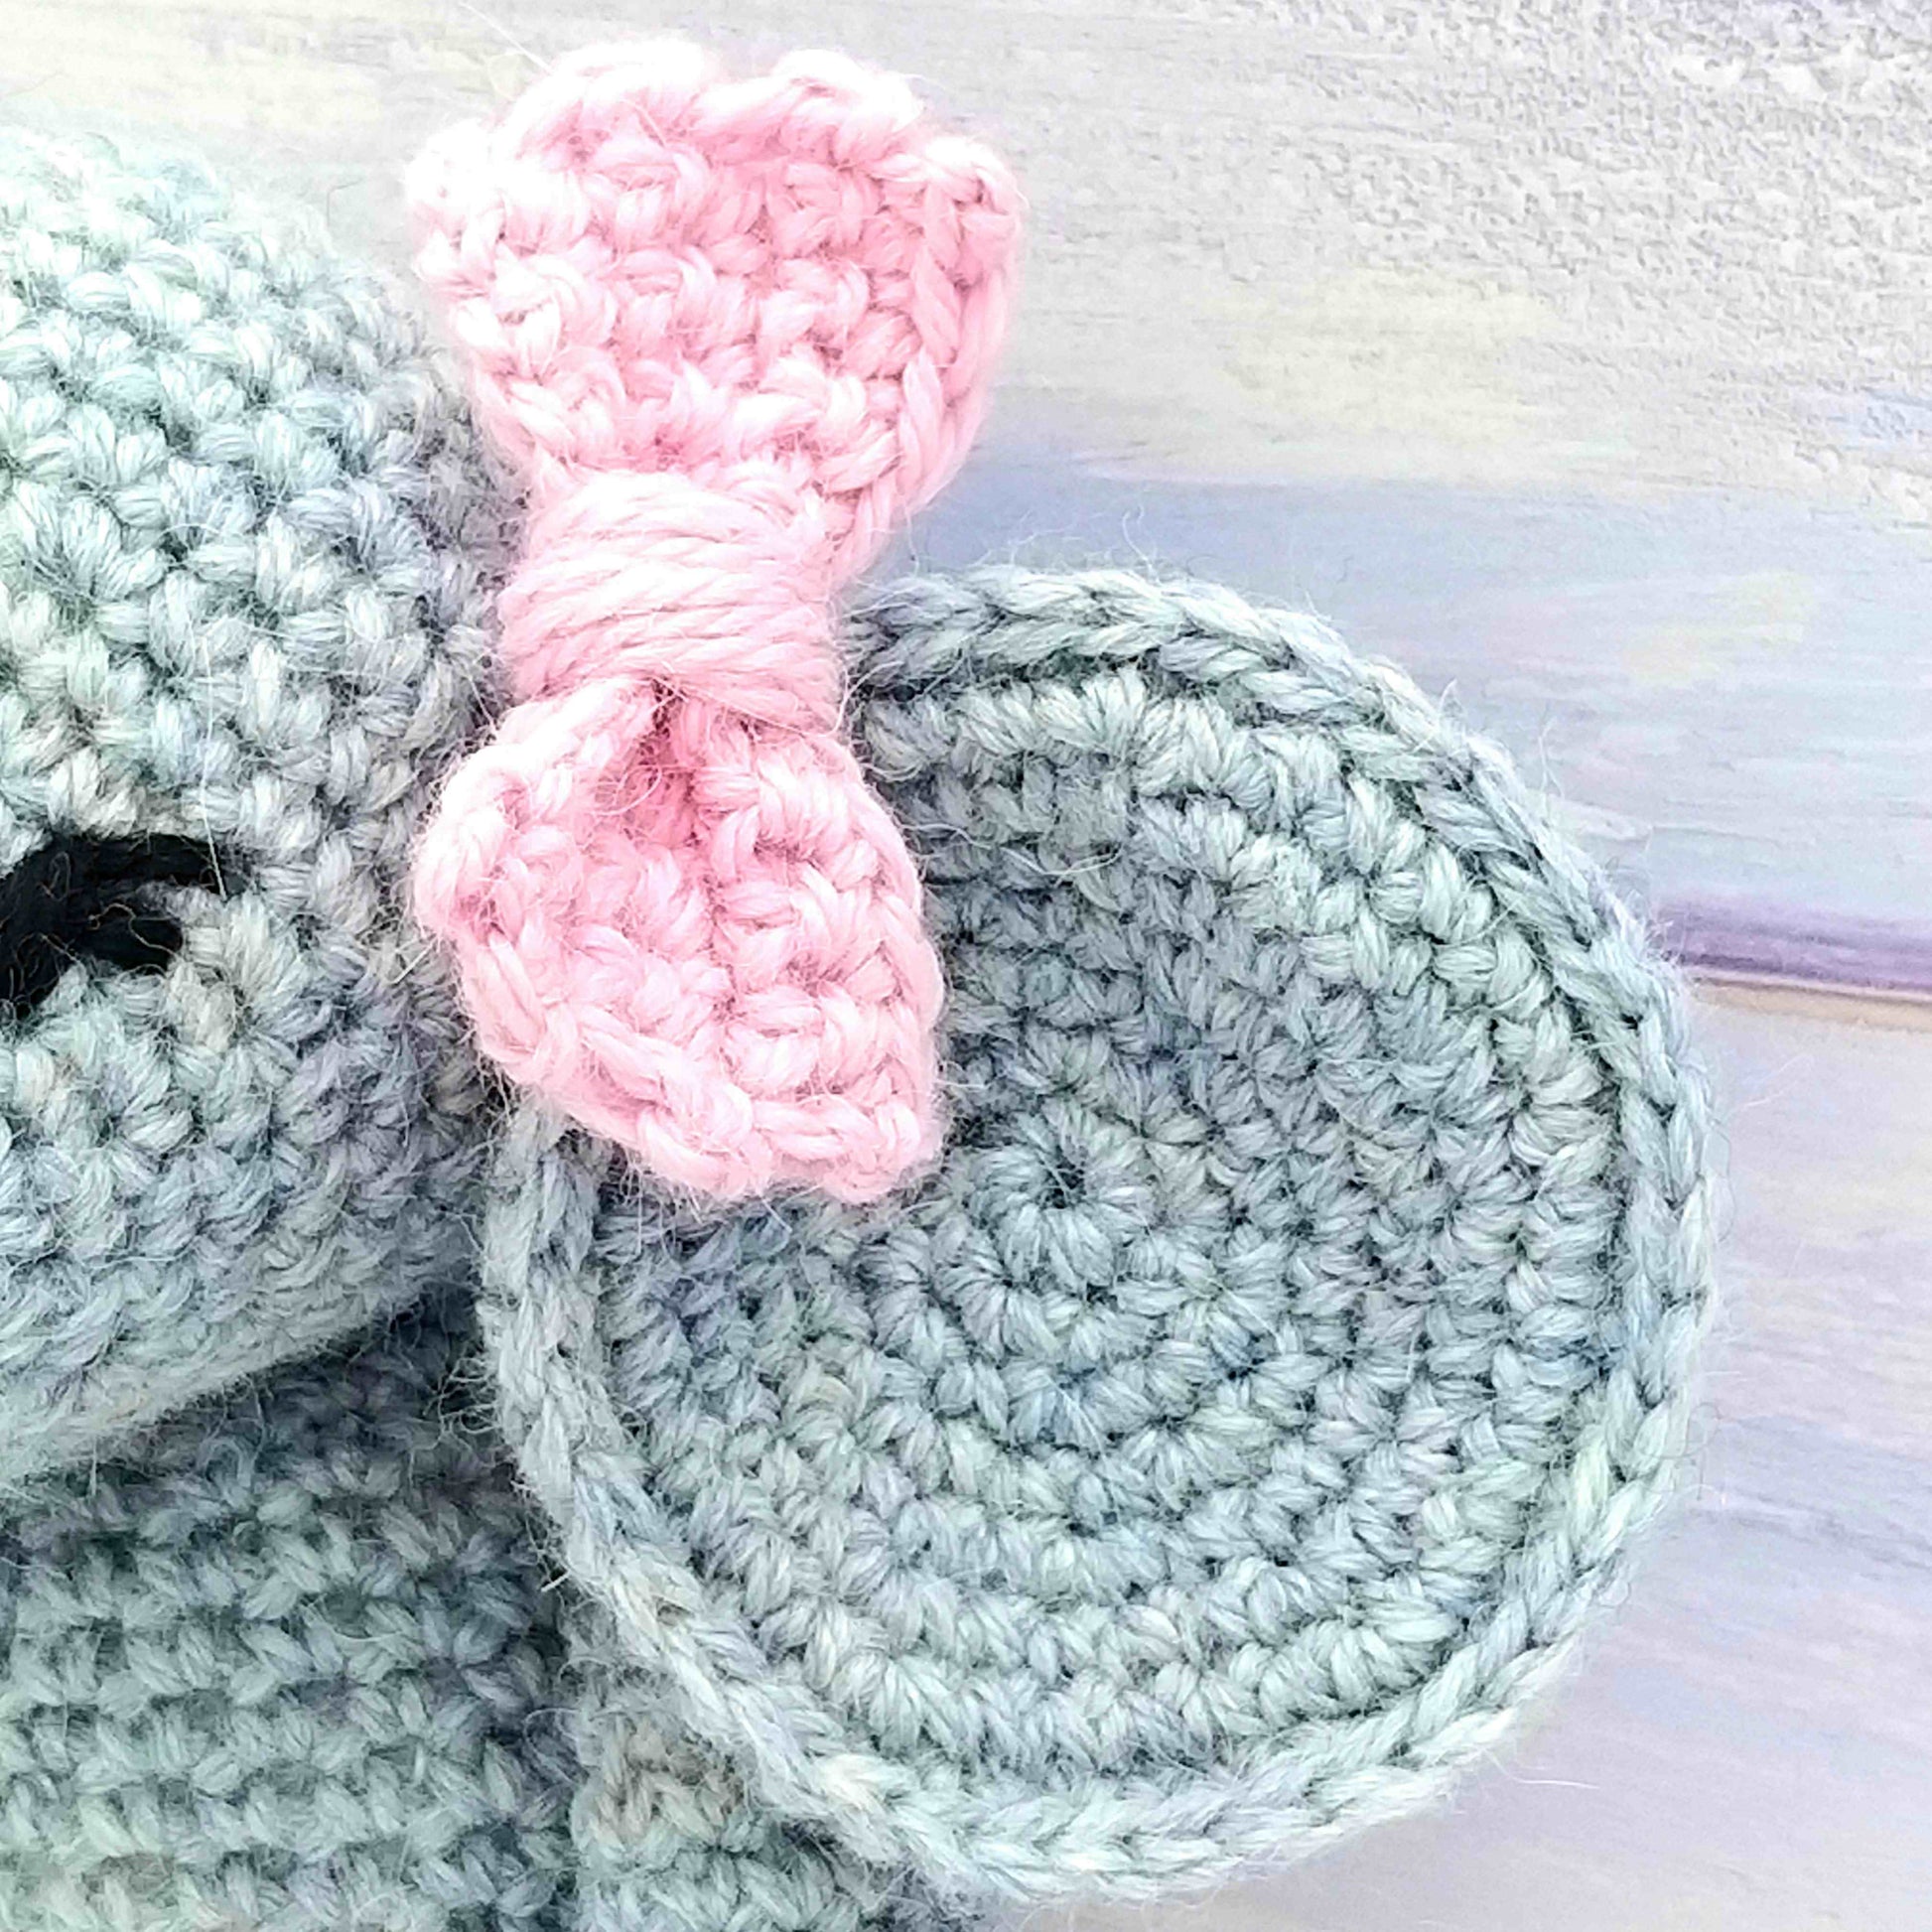 Elephant Crochet Kit 